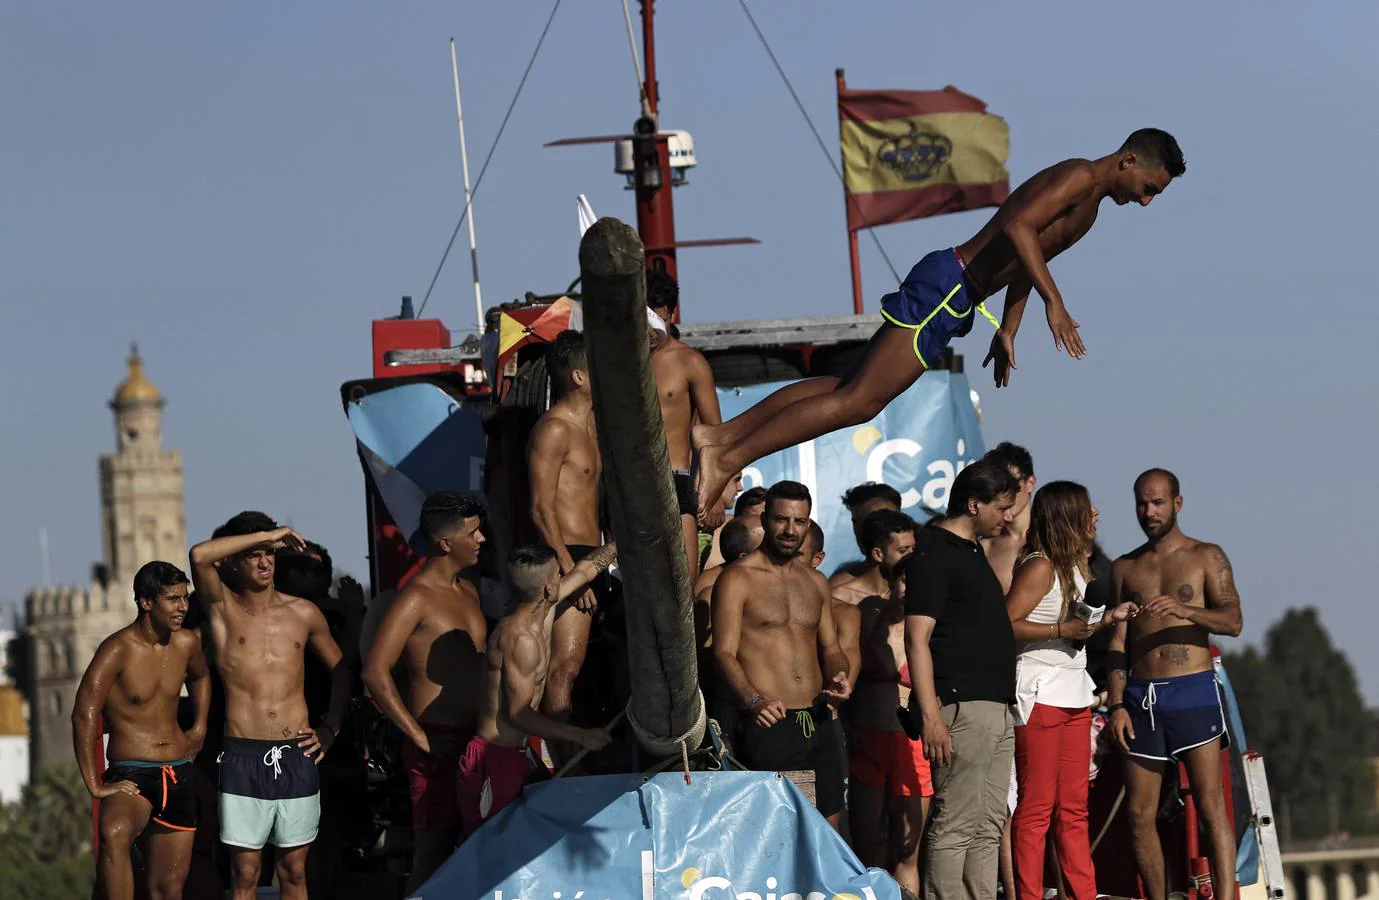 El poste se coloca horizontalmente sobre la proa de una barcaza en el río Guadalquivir